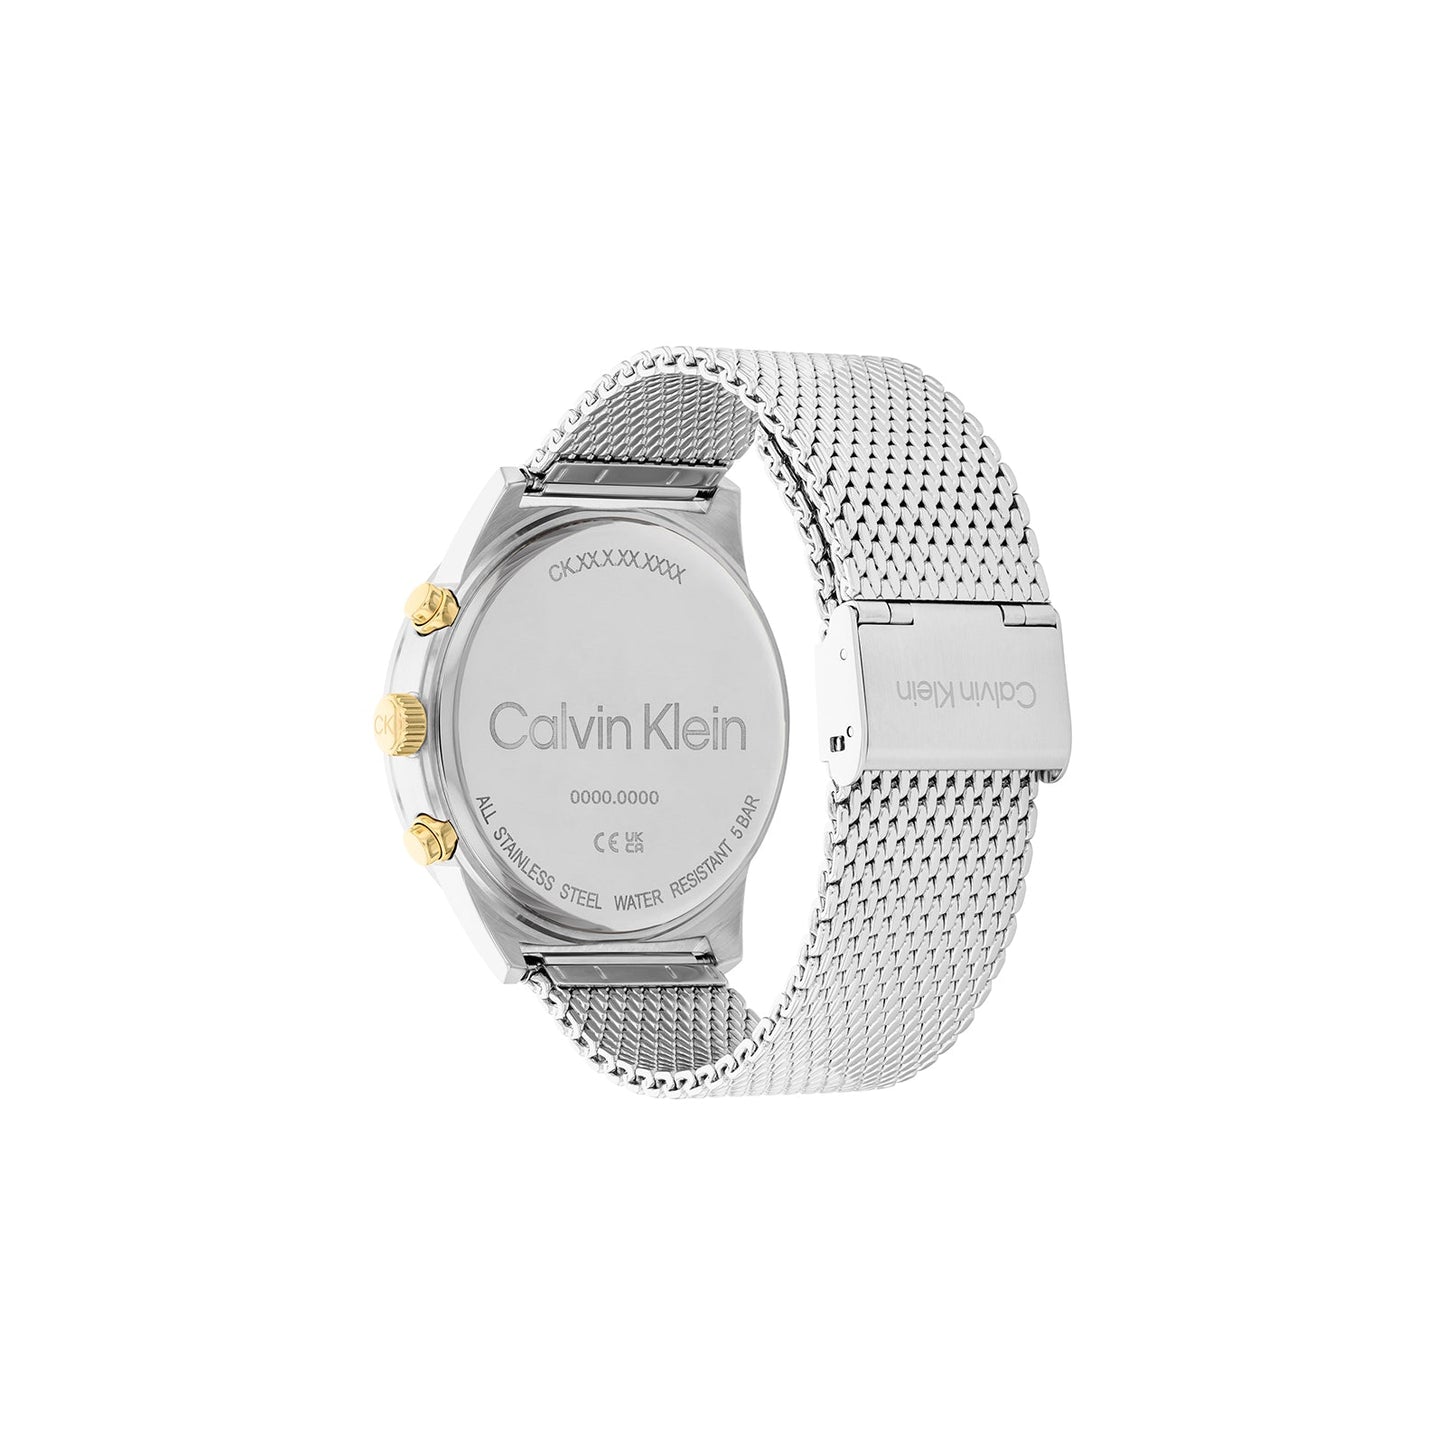 Calvin Klein 25200296 Men's Steel Mesh Watch